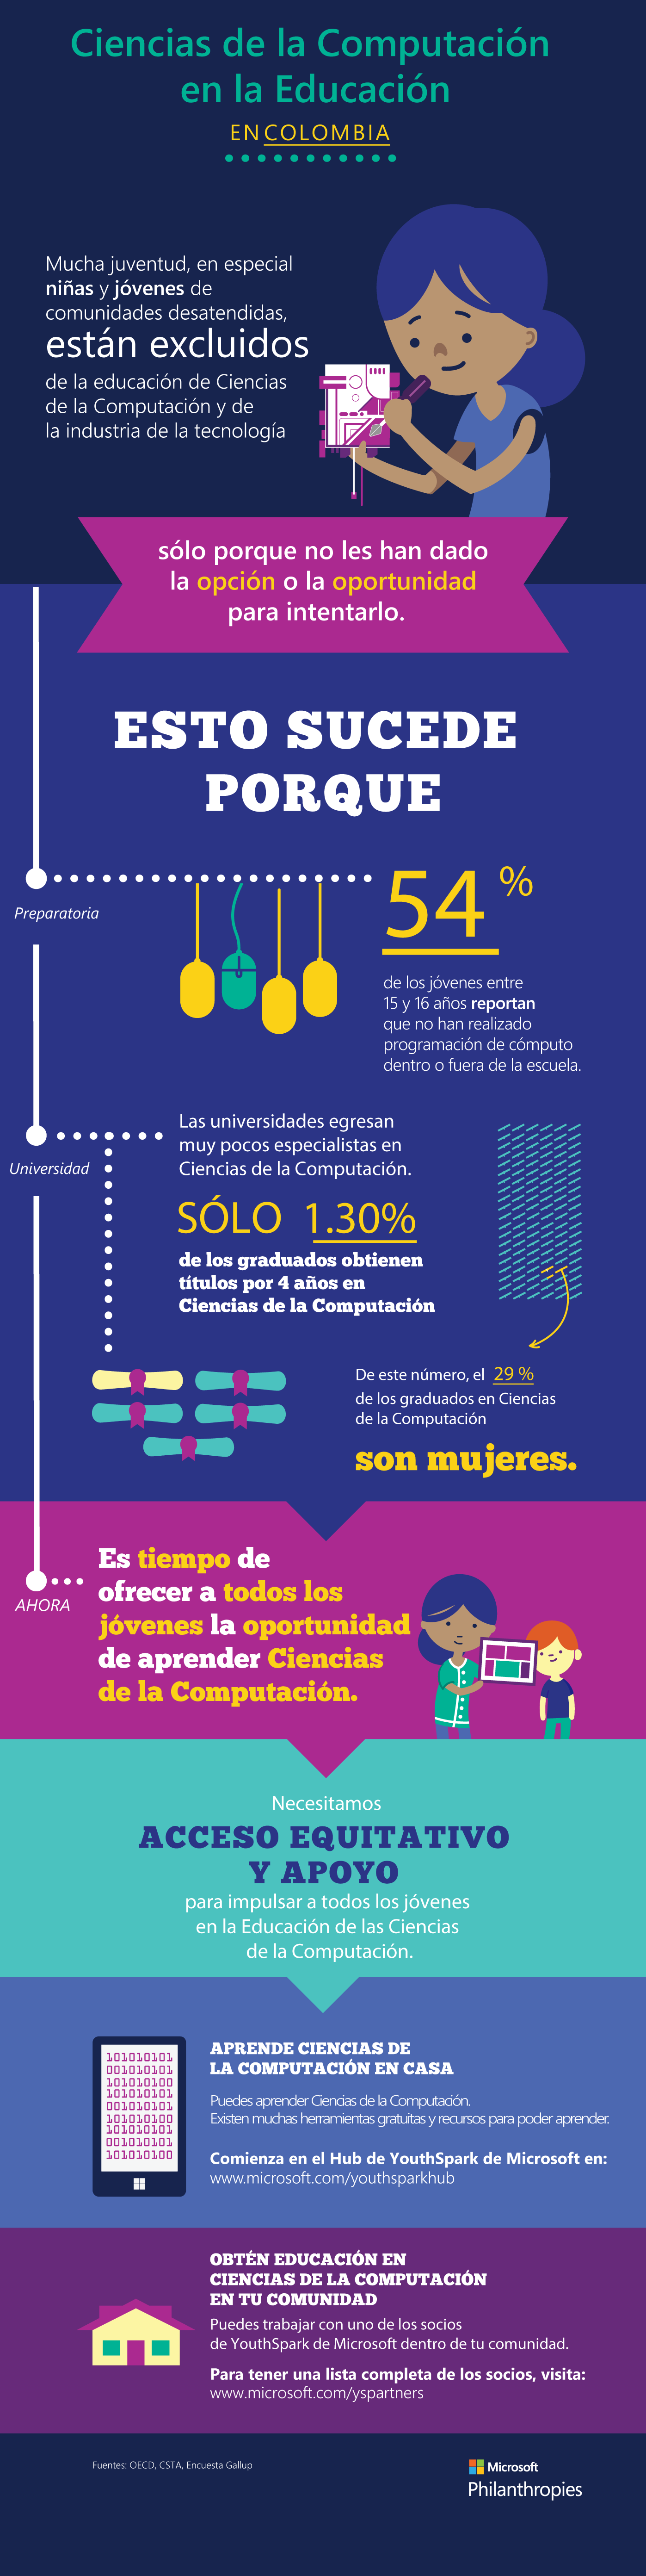 Infografia - Ciencias de la Computacion en la Educacion en Colombia